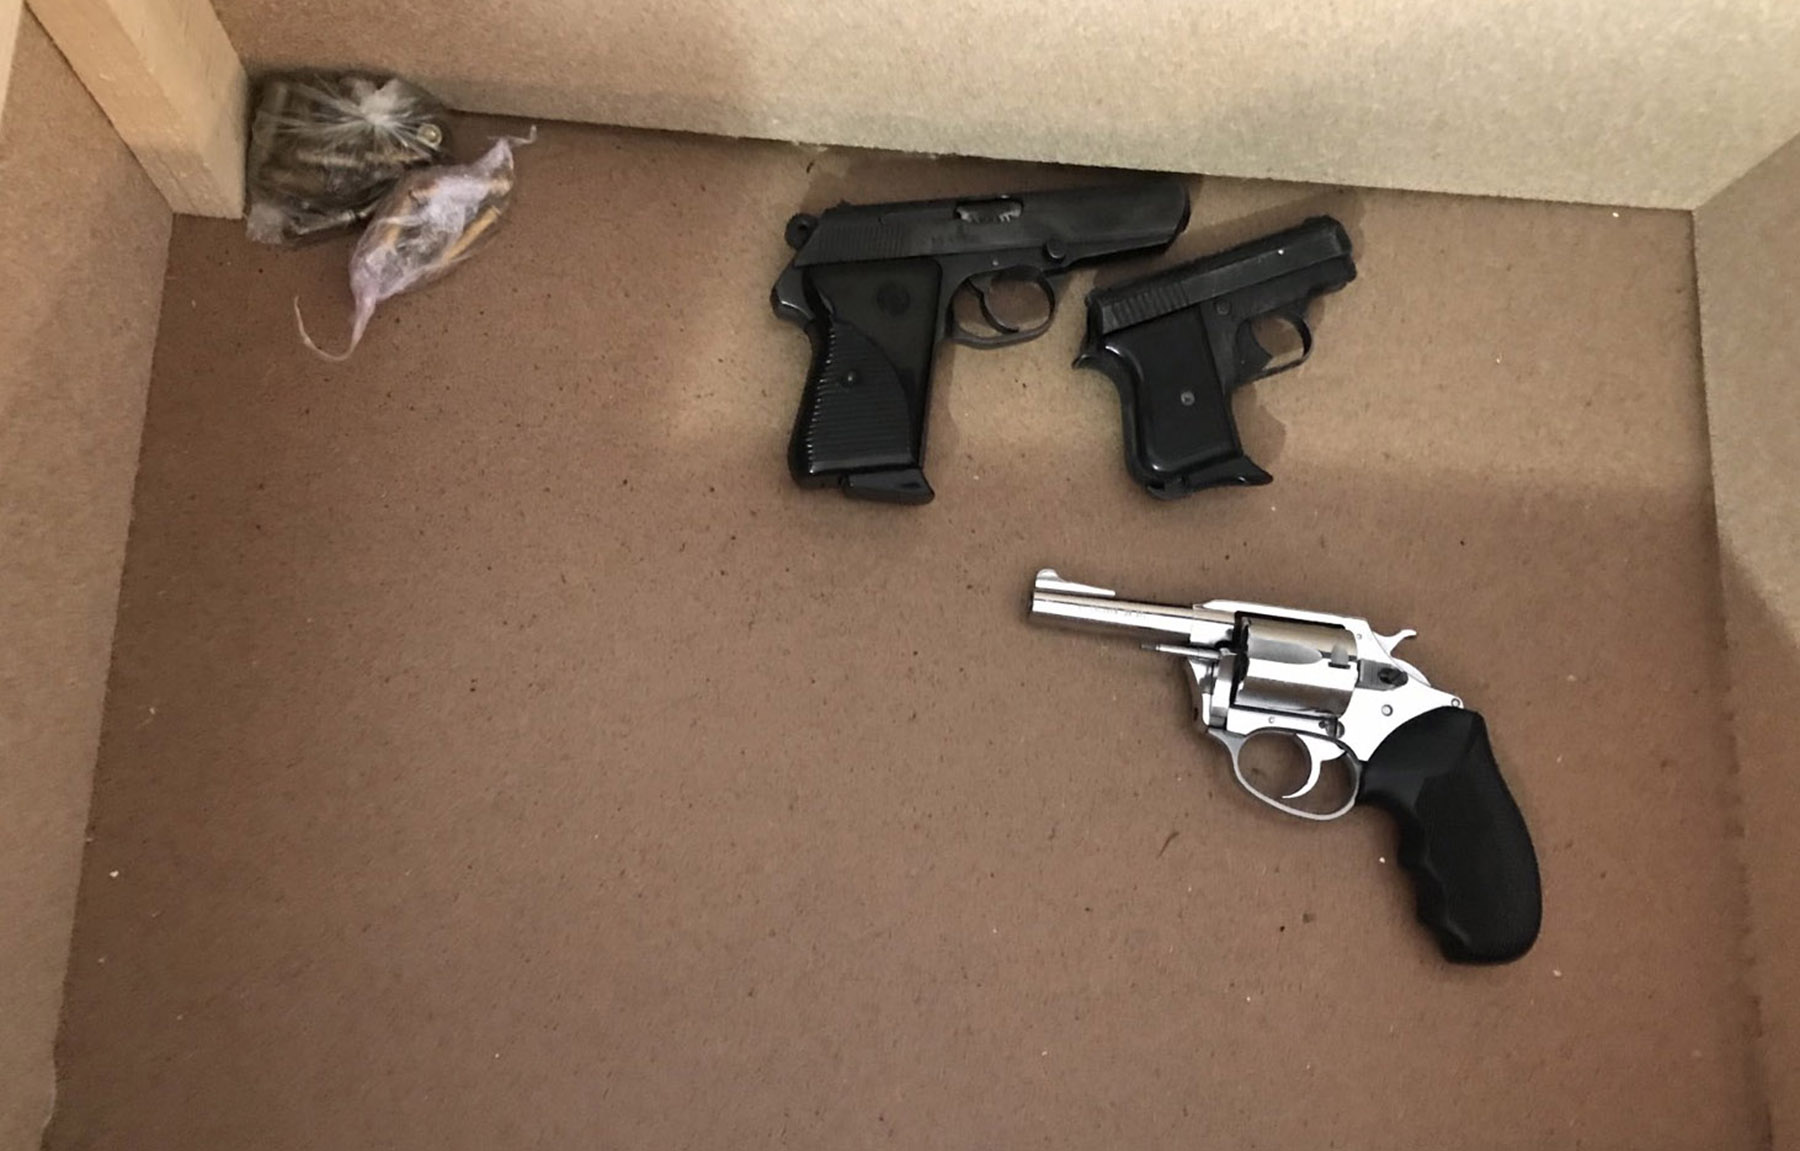 Ухапшене две особе и заплењени спид, екстази, кофеин, пиштољи, аутоматска пушка и муниција различитог калибра